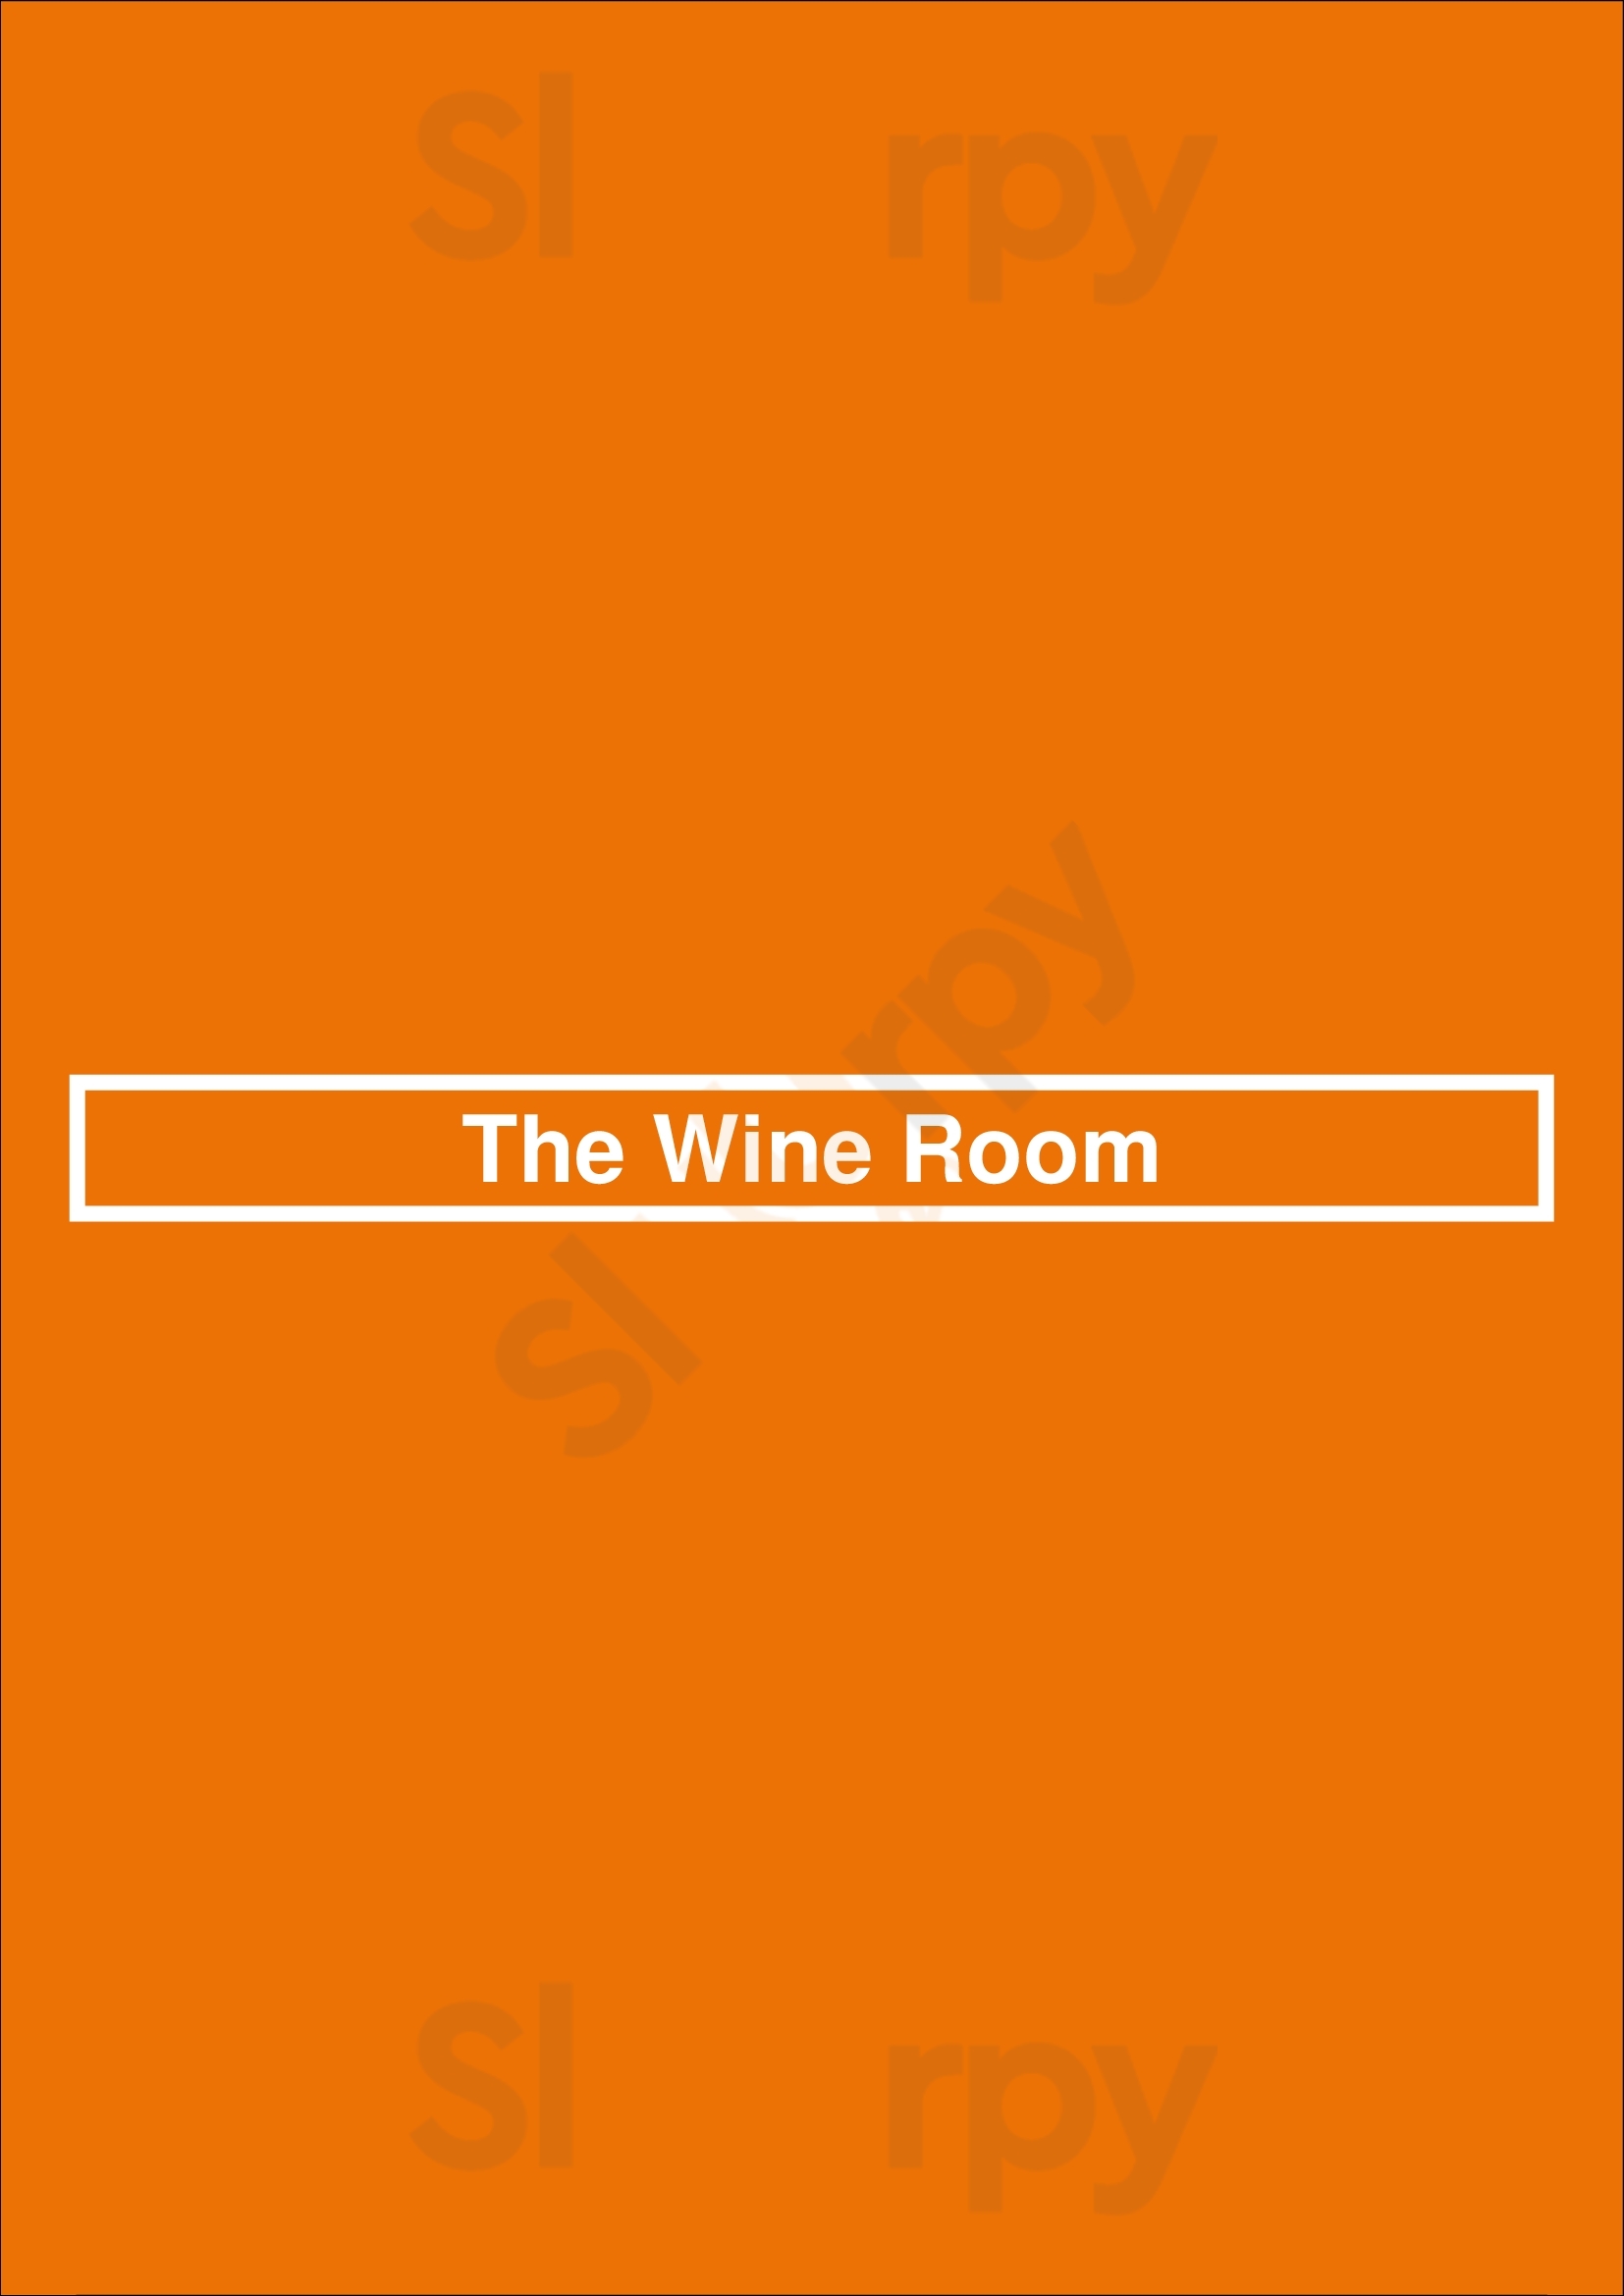 The Wine Room Sydney Menu - 1